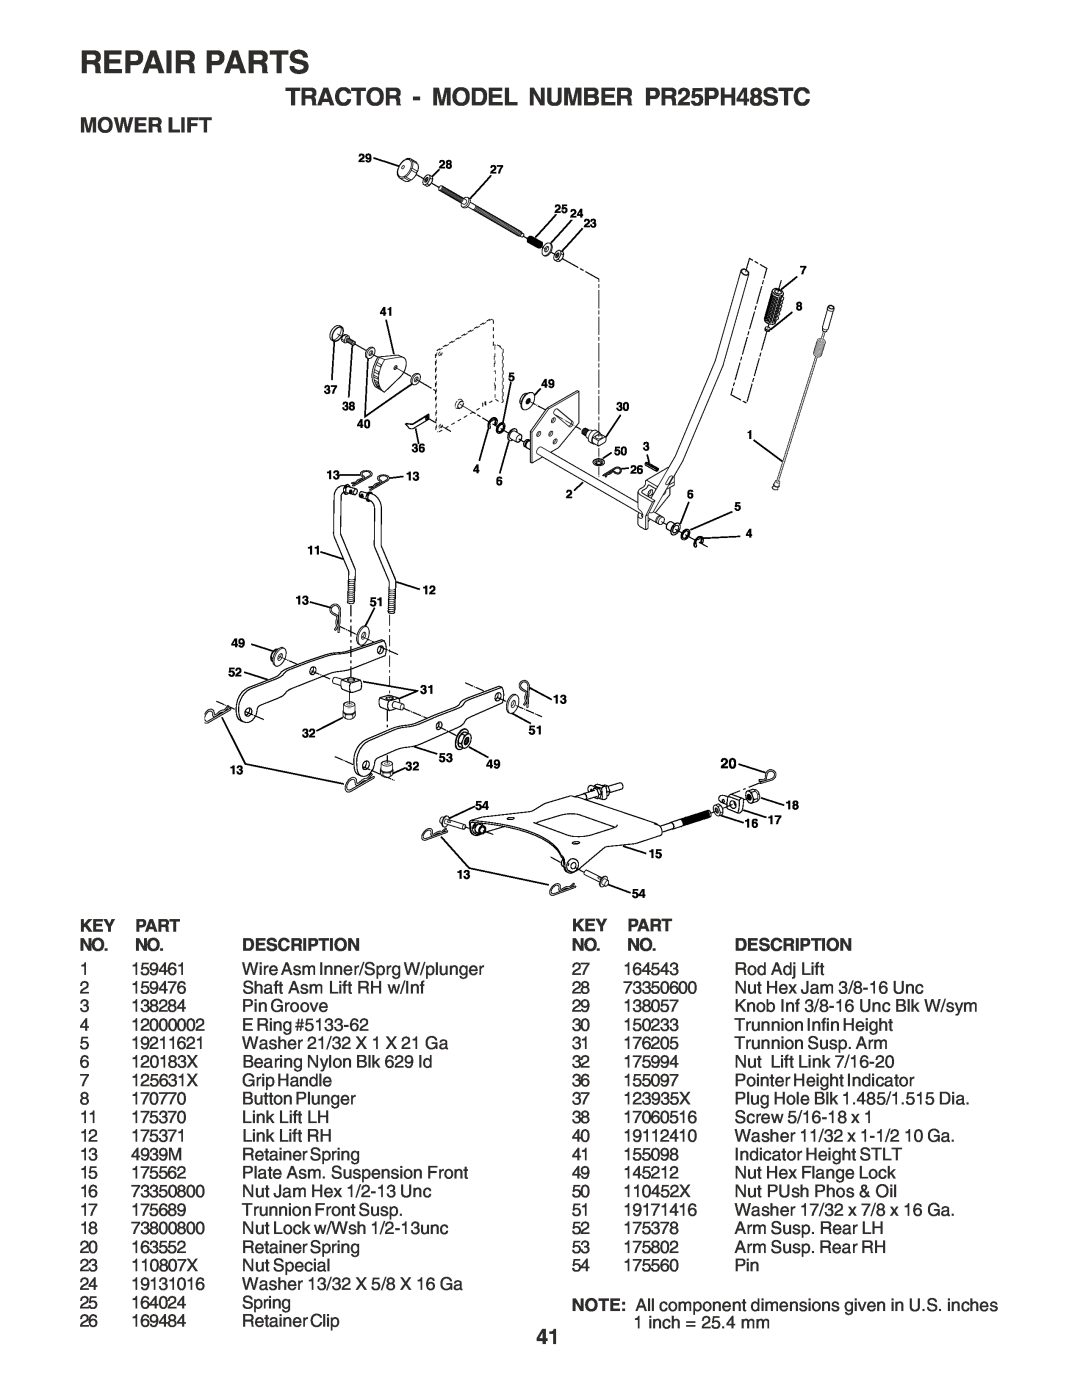 Poulan owner manual Mower Lift, Repair Parts, TRACTOR - MODEL NUMBER PR25PH48STC 